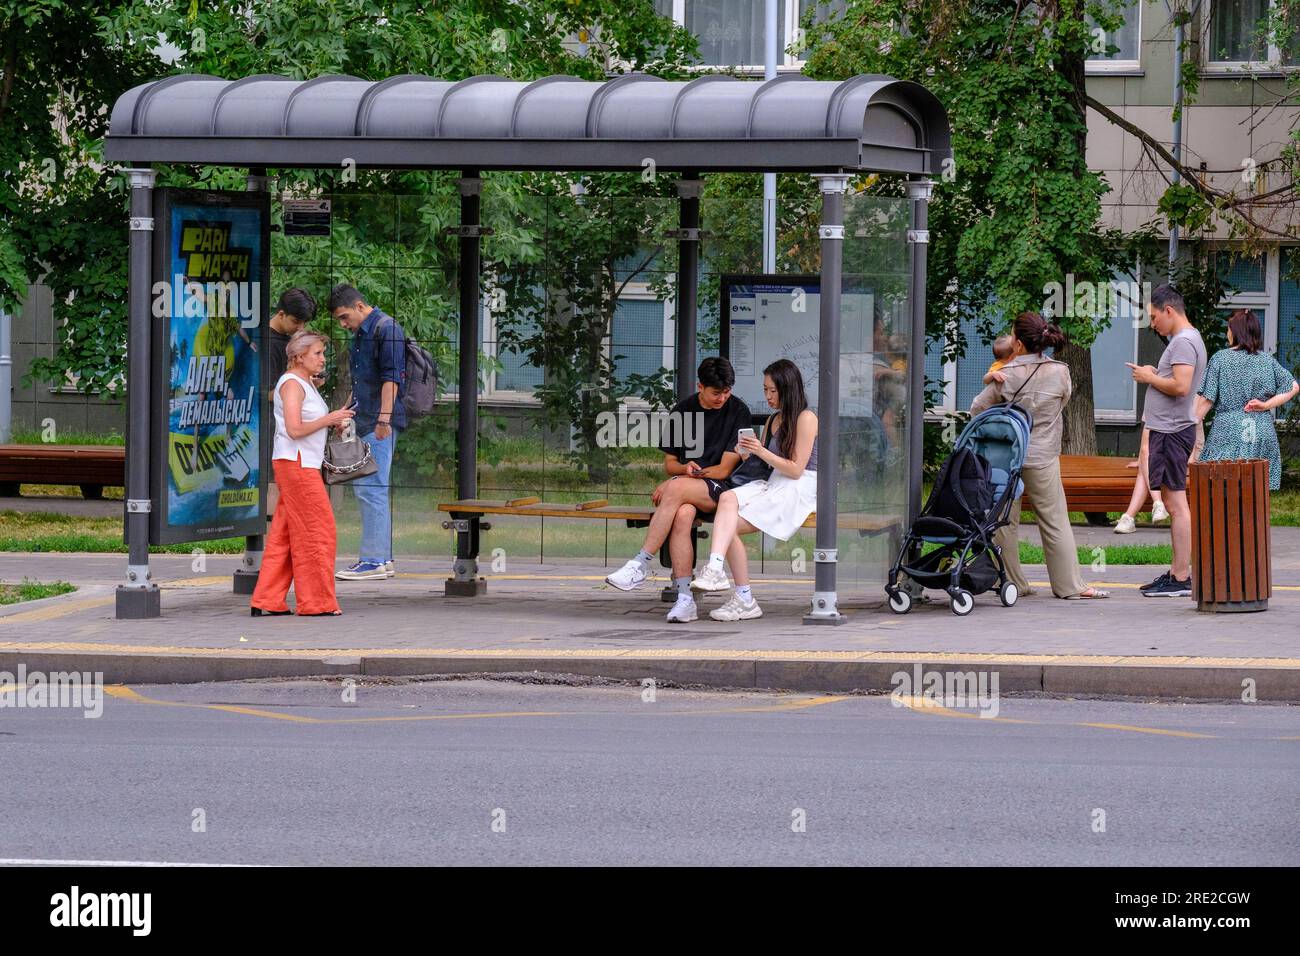 Kasachstan, Almaty. Straßenszene: Passagiere, die an der Bushaltestelle auf den Bus warten. Stockfoto